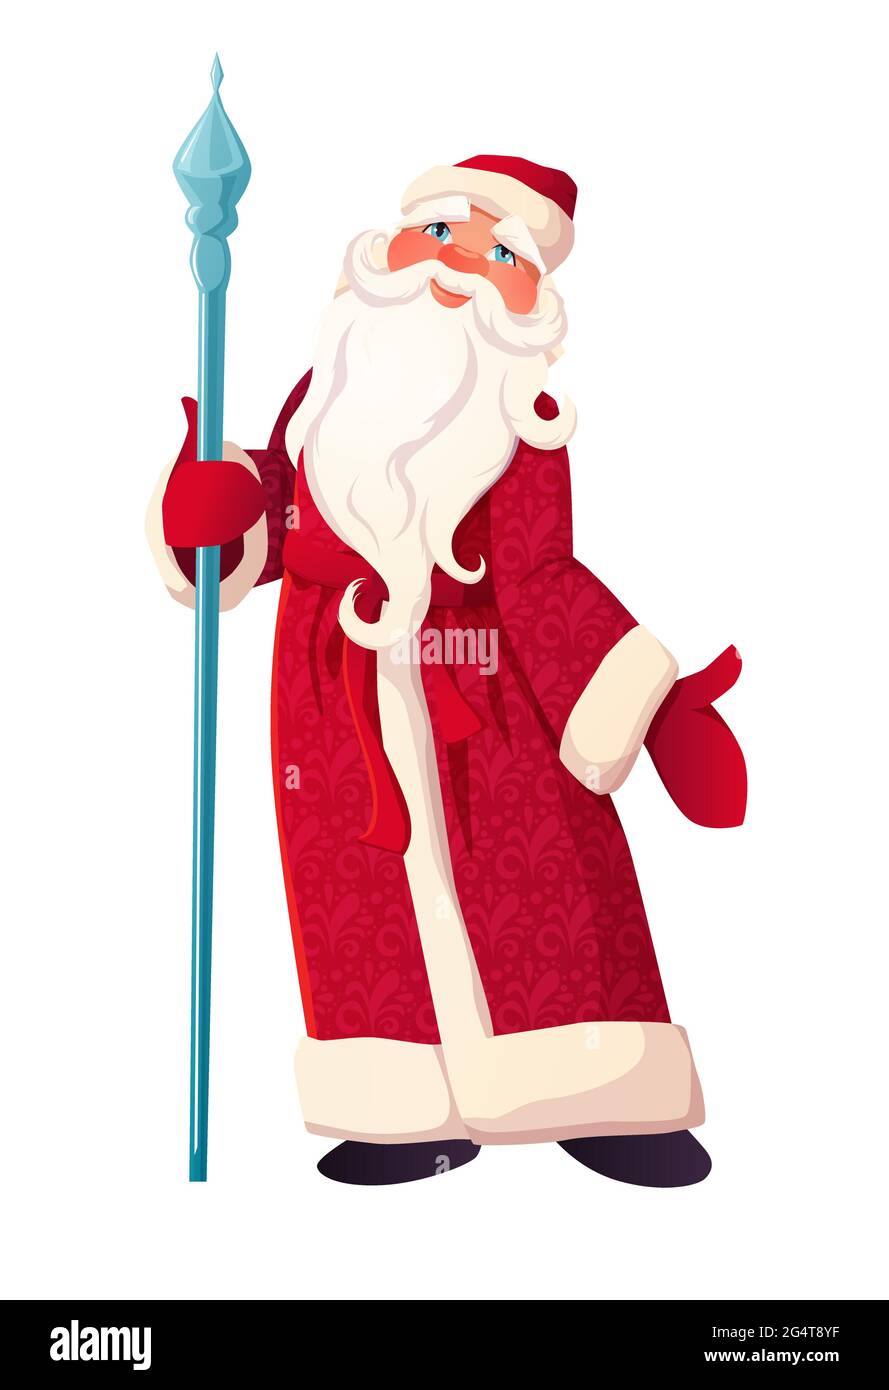 Russischer Vater Frost mit Stock in roter Kleidung. Weihnachtsmann oder Ded Moroz. Cartoon Vektor Illustration Kunst Stock Vektor